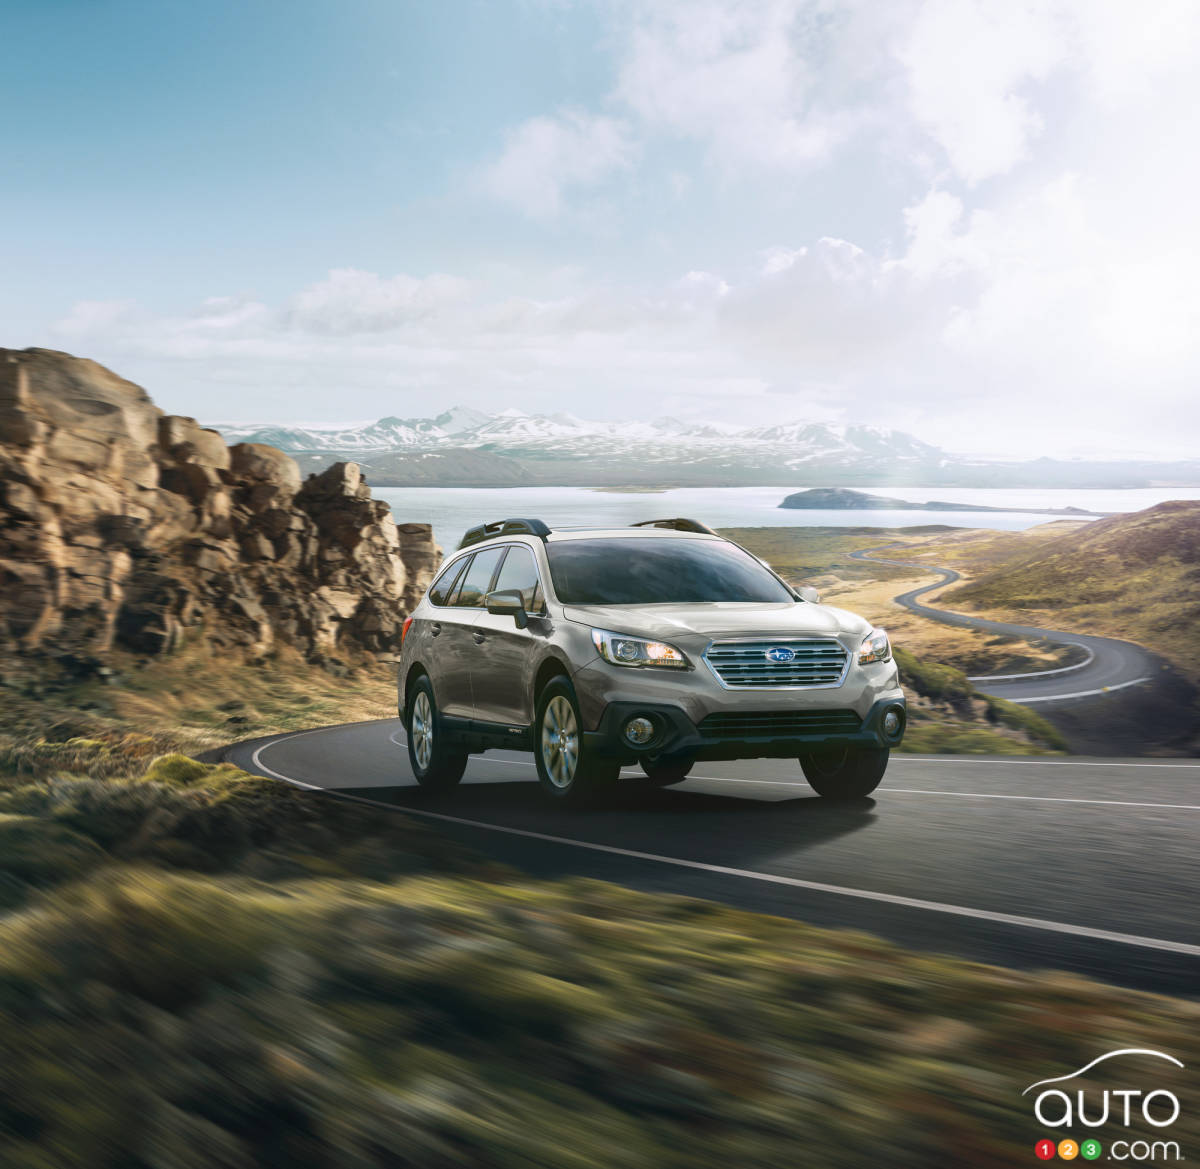 Voici la nouvelle Subaru Outback 2017!